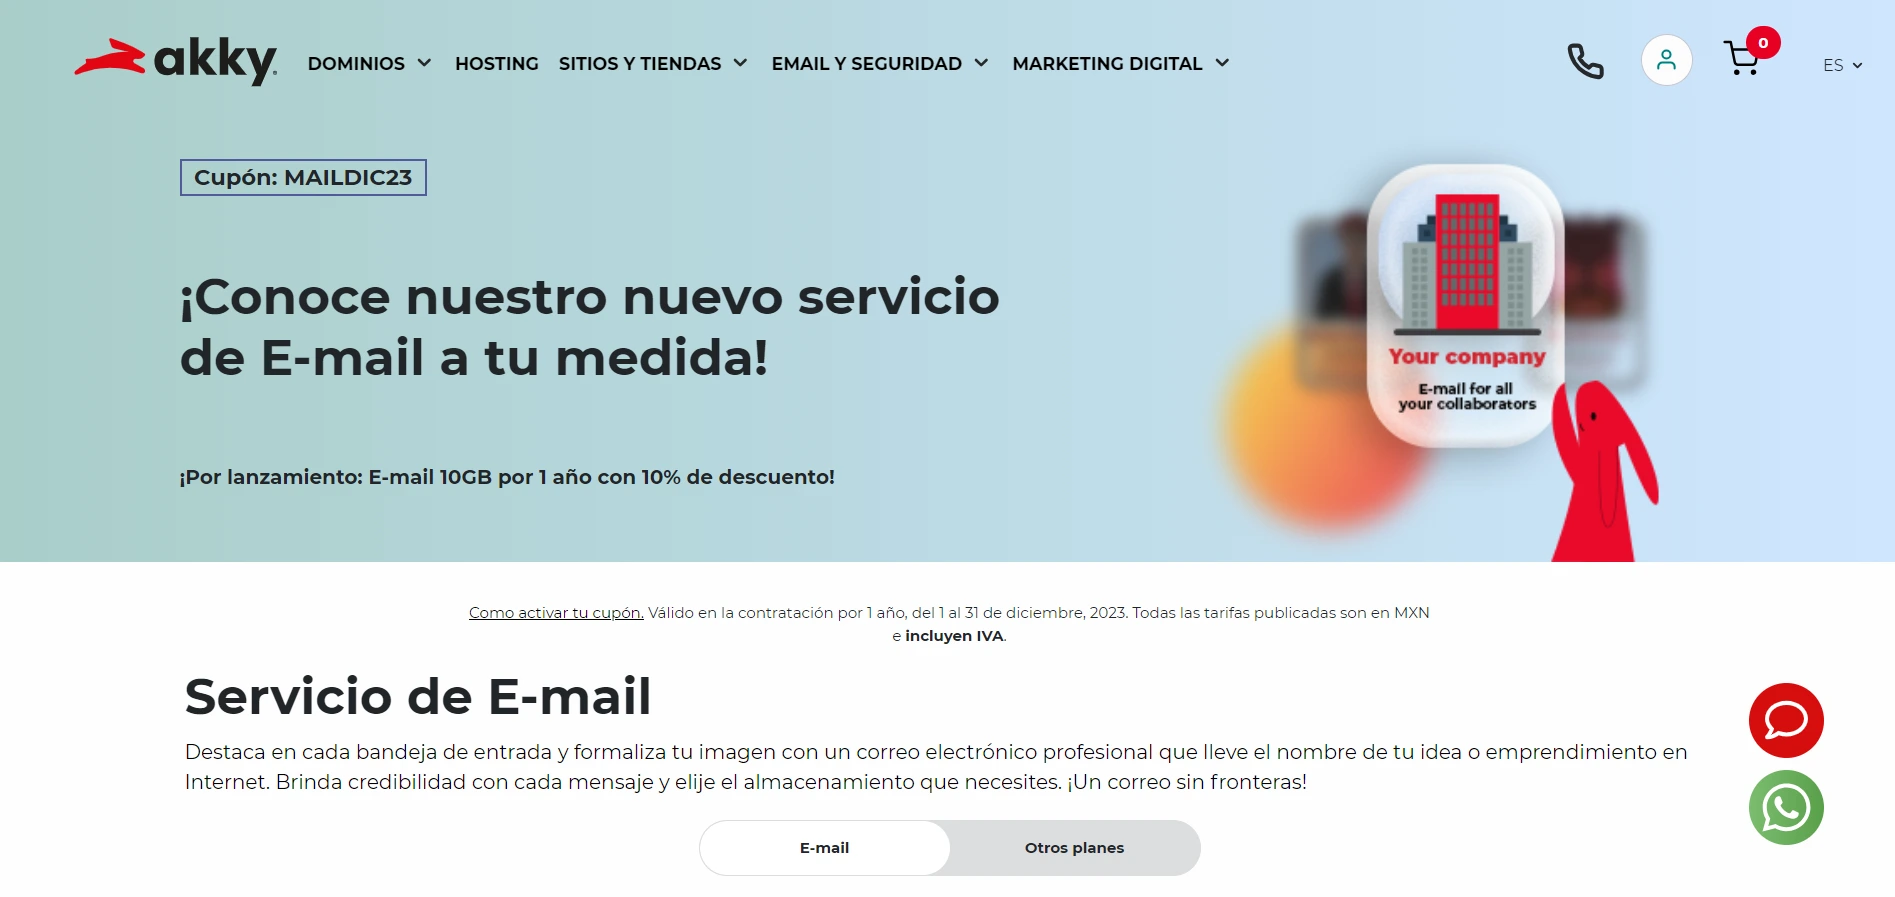 Sitio web de Akky, servicio de Email Profesional